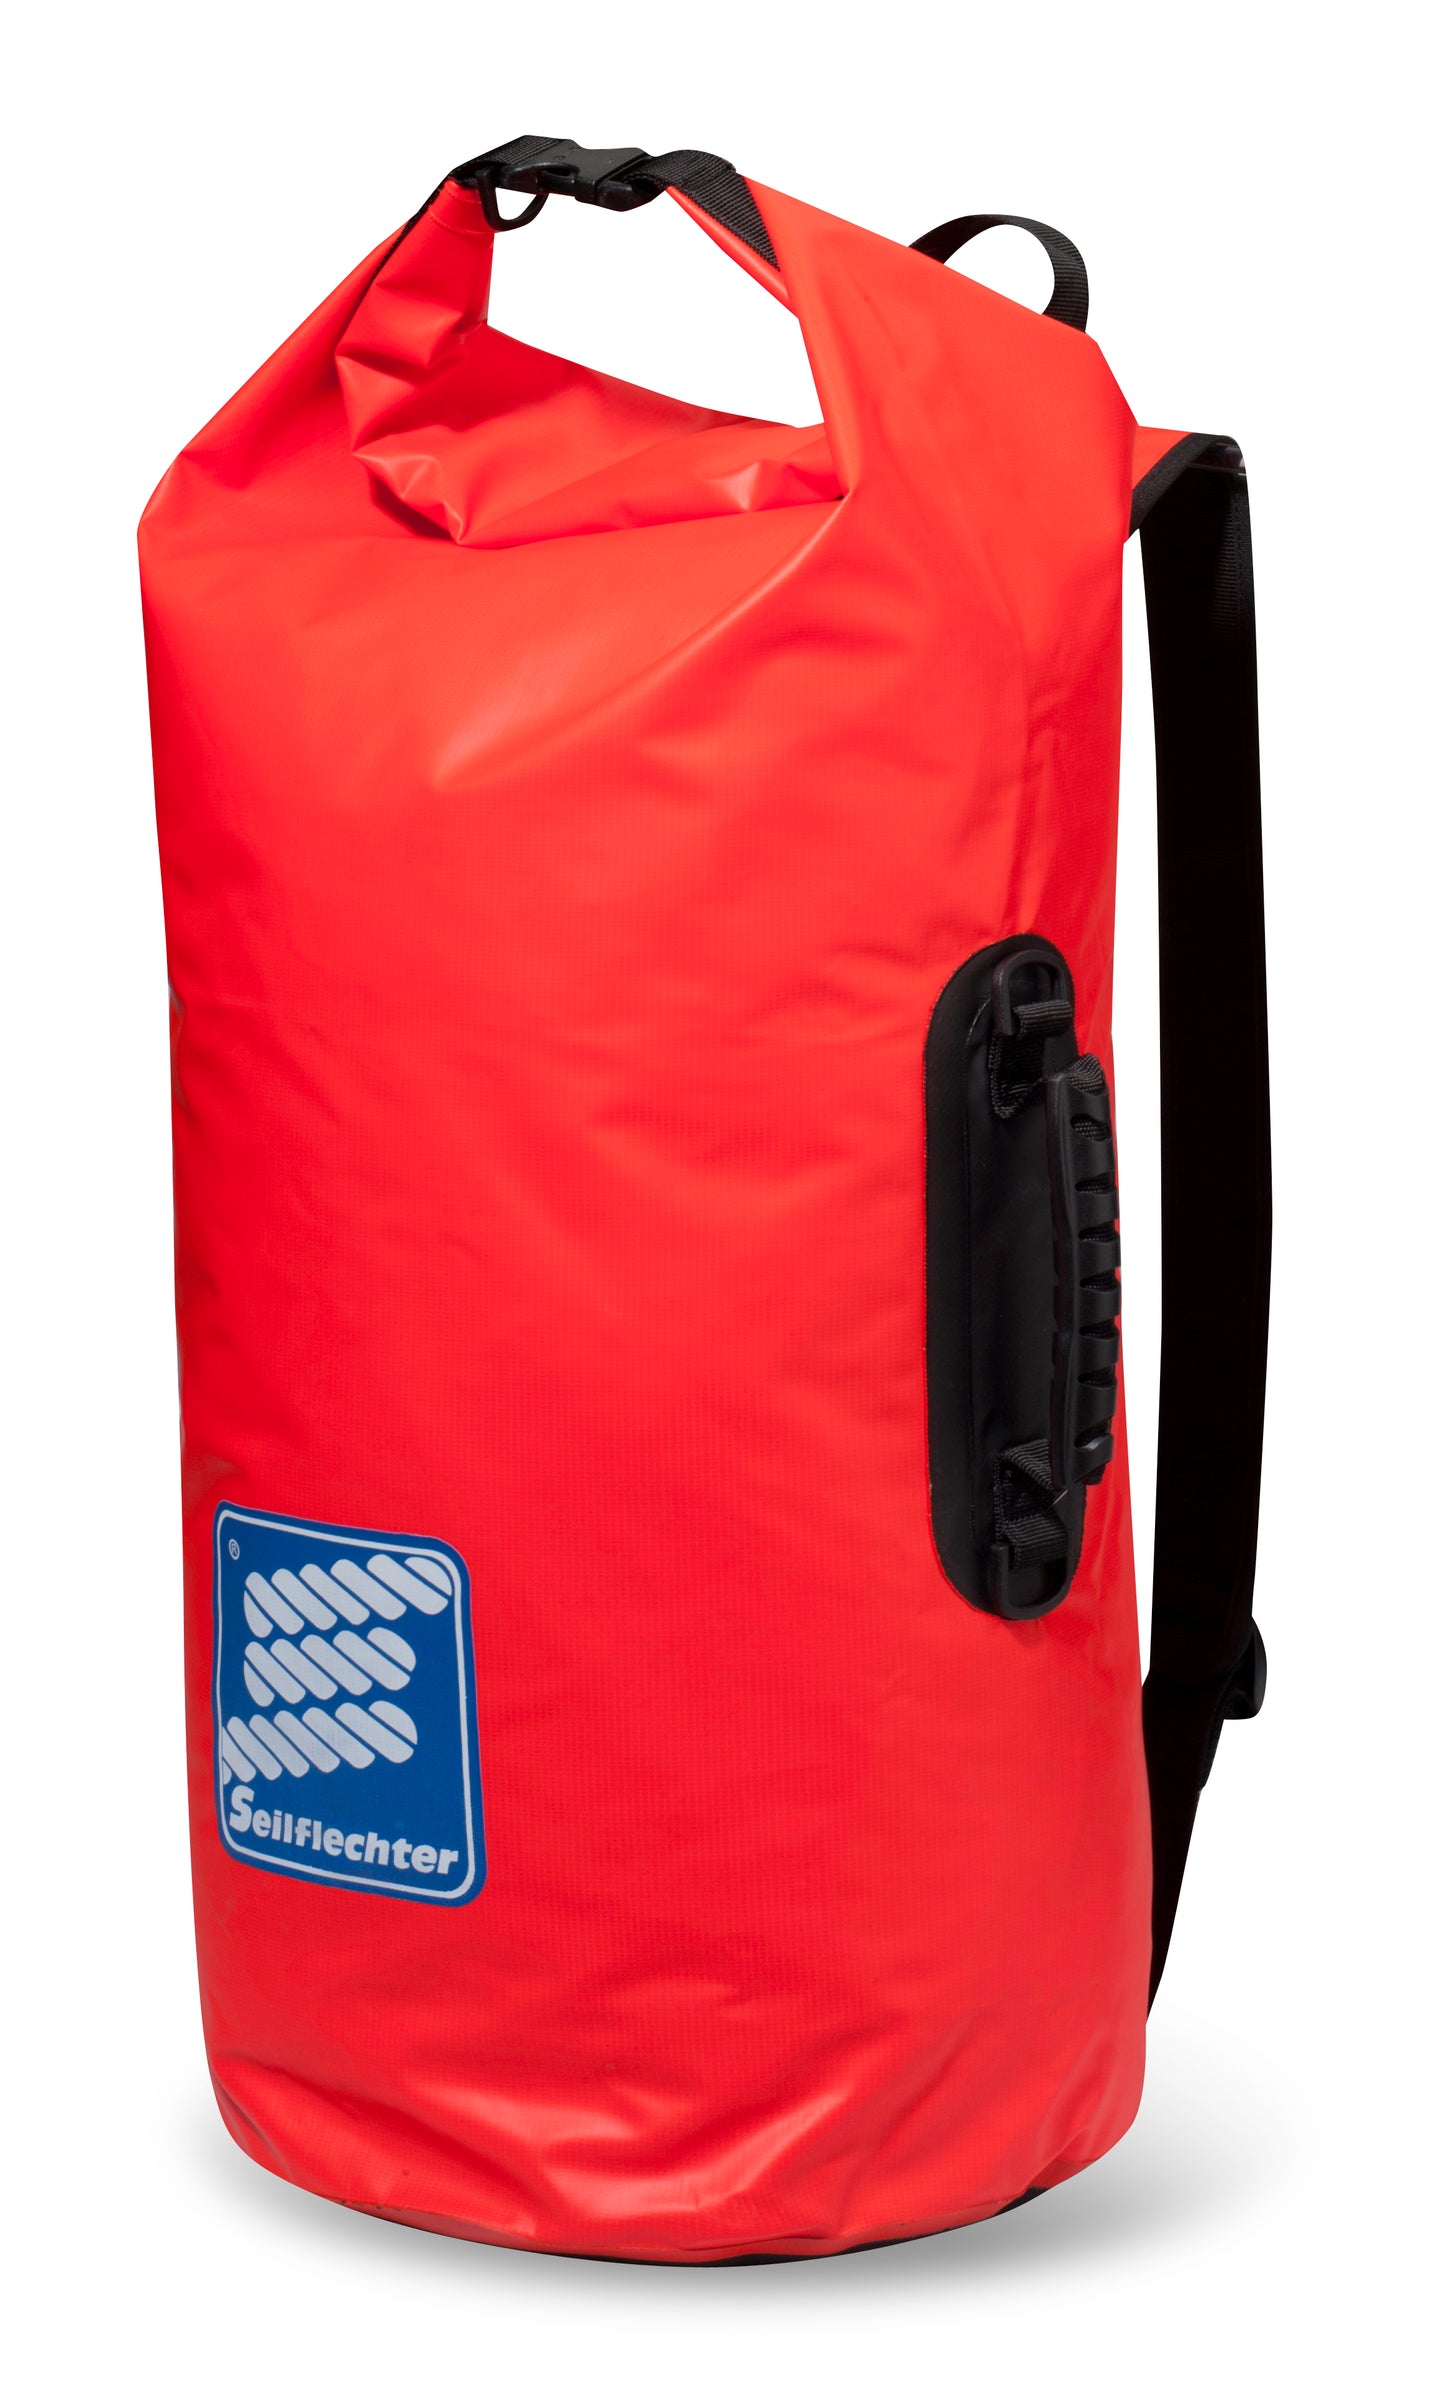 Wasserdichte Taifun Packtasche von Seilflechter SeesackIdeal für jeden Anlass um die wichtigsten Dinge wasserfest zu verpacken oder nasse Saschen zu verstauen. 
Hochwertige Verarbeitung 
Inklusive Tragegurt und Henkel
FaBallastsackSeilflechterWasserdichte Taifun Packtasche von Seilflechter SeesackDirt Adventure 4x4 - Offroad Outdoor Camping